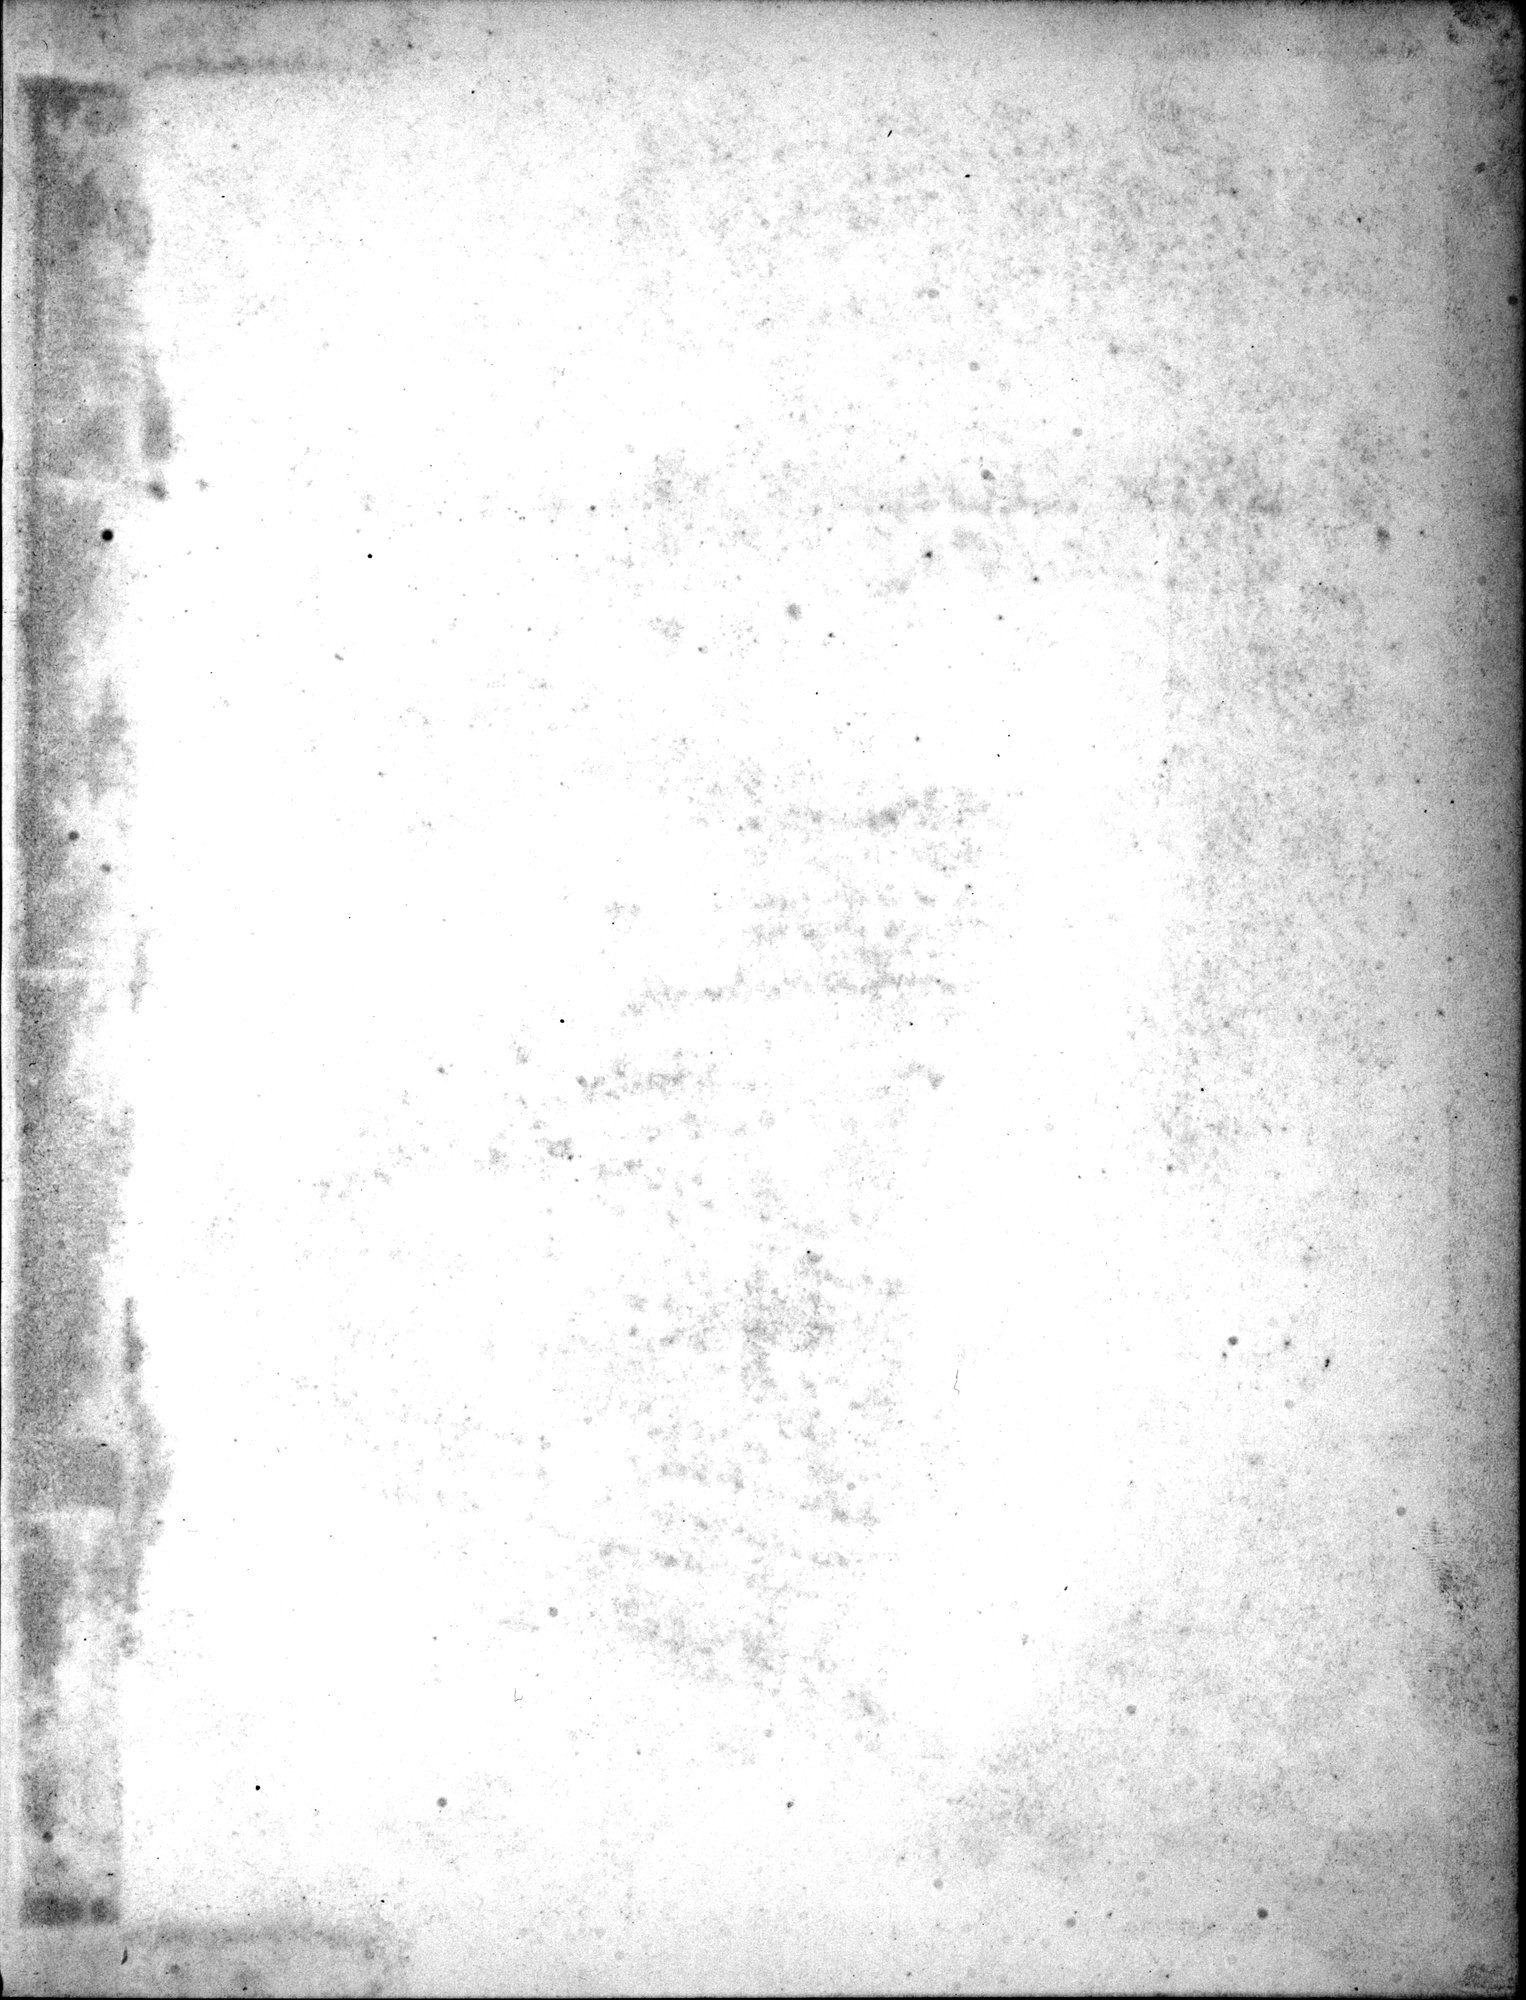 Recherches Archéologiques en Asie Centrale (1931) : vol.1 / Page 3 (Grayscale High Resolution Image)